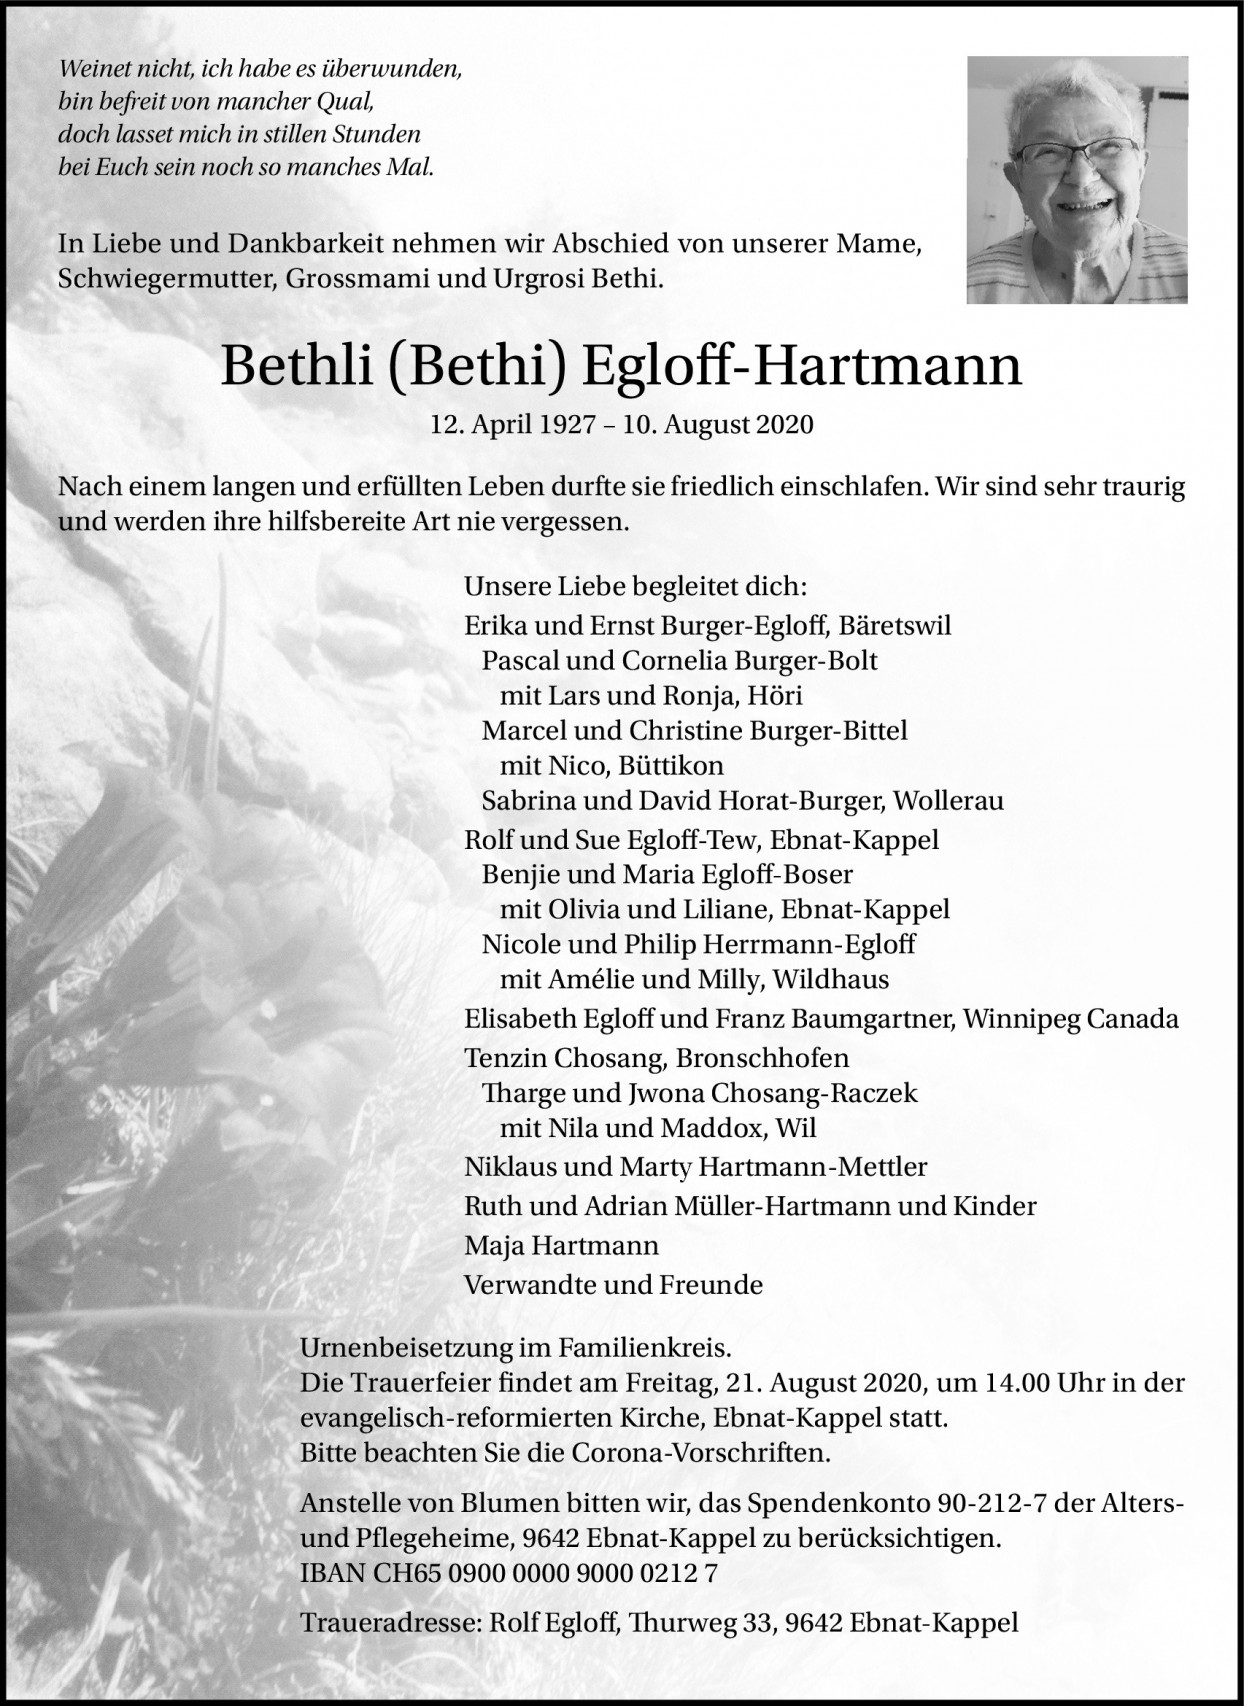 Bethli Egloff-Hartmann